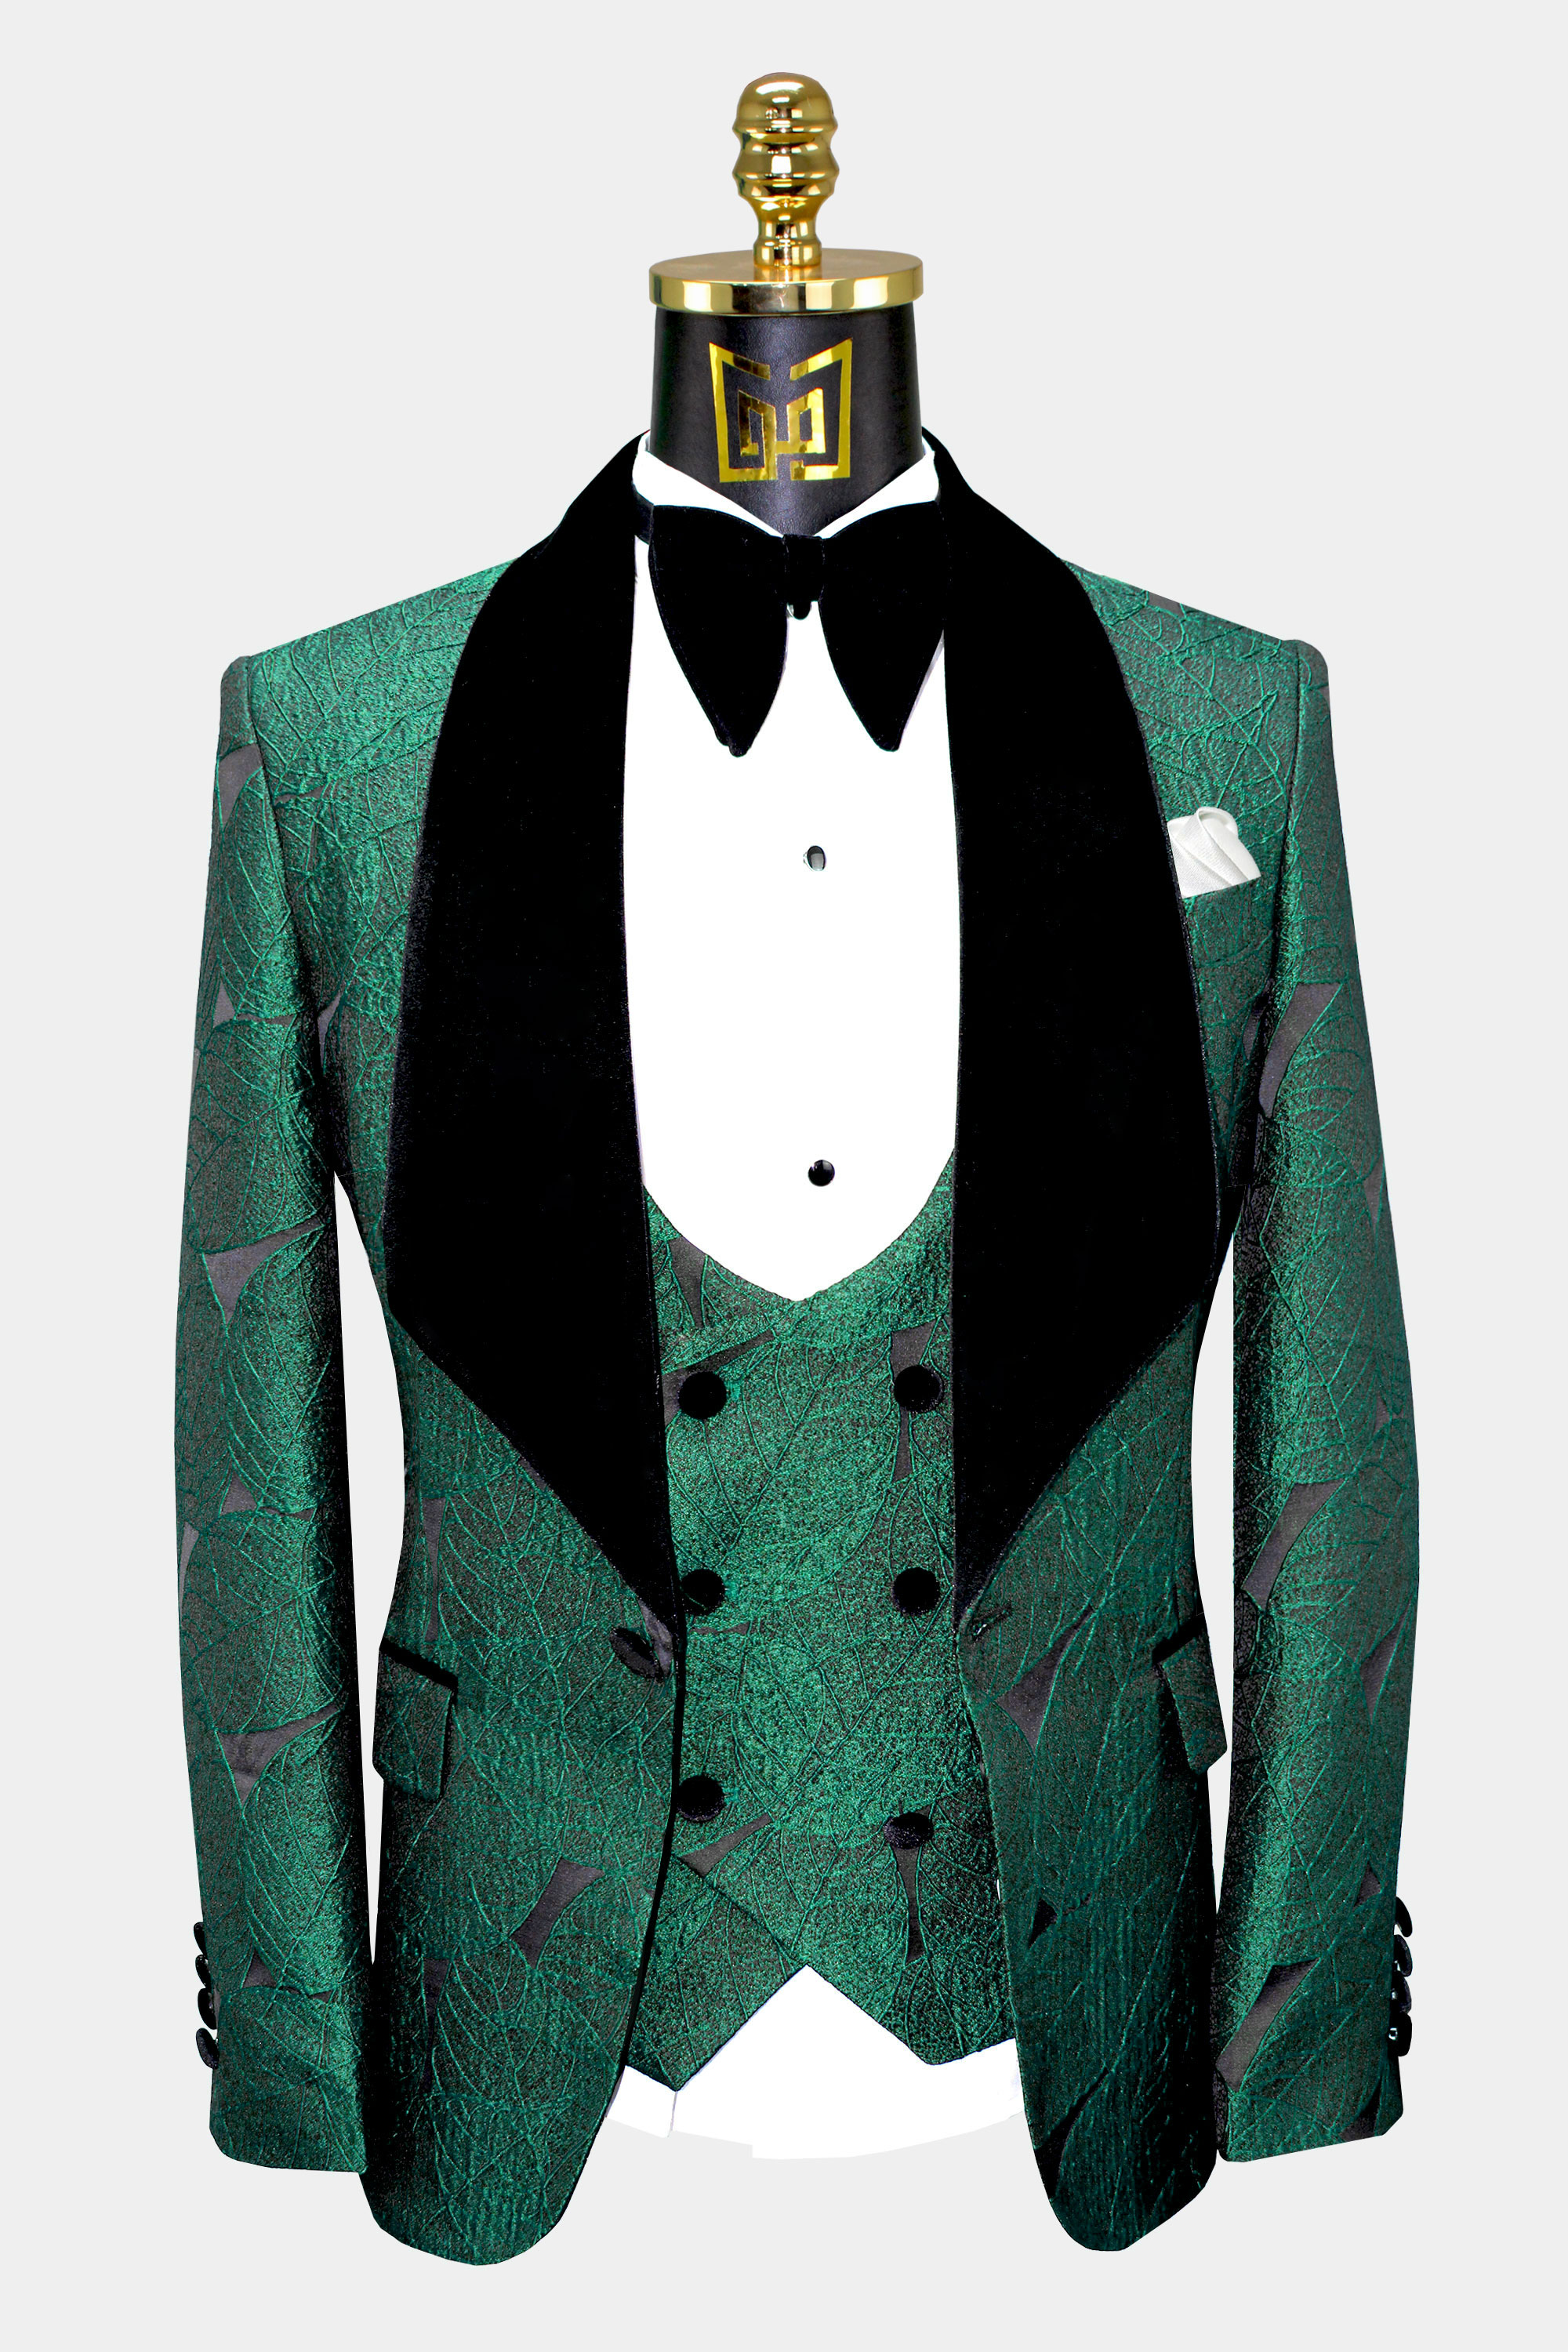 Emerald-Green-Tuxedo-Jacket-from-Gentlemansguru.com